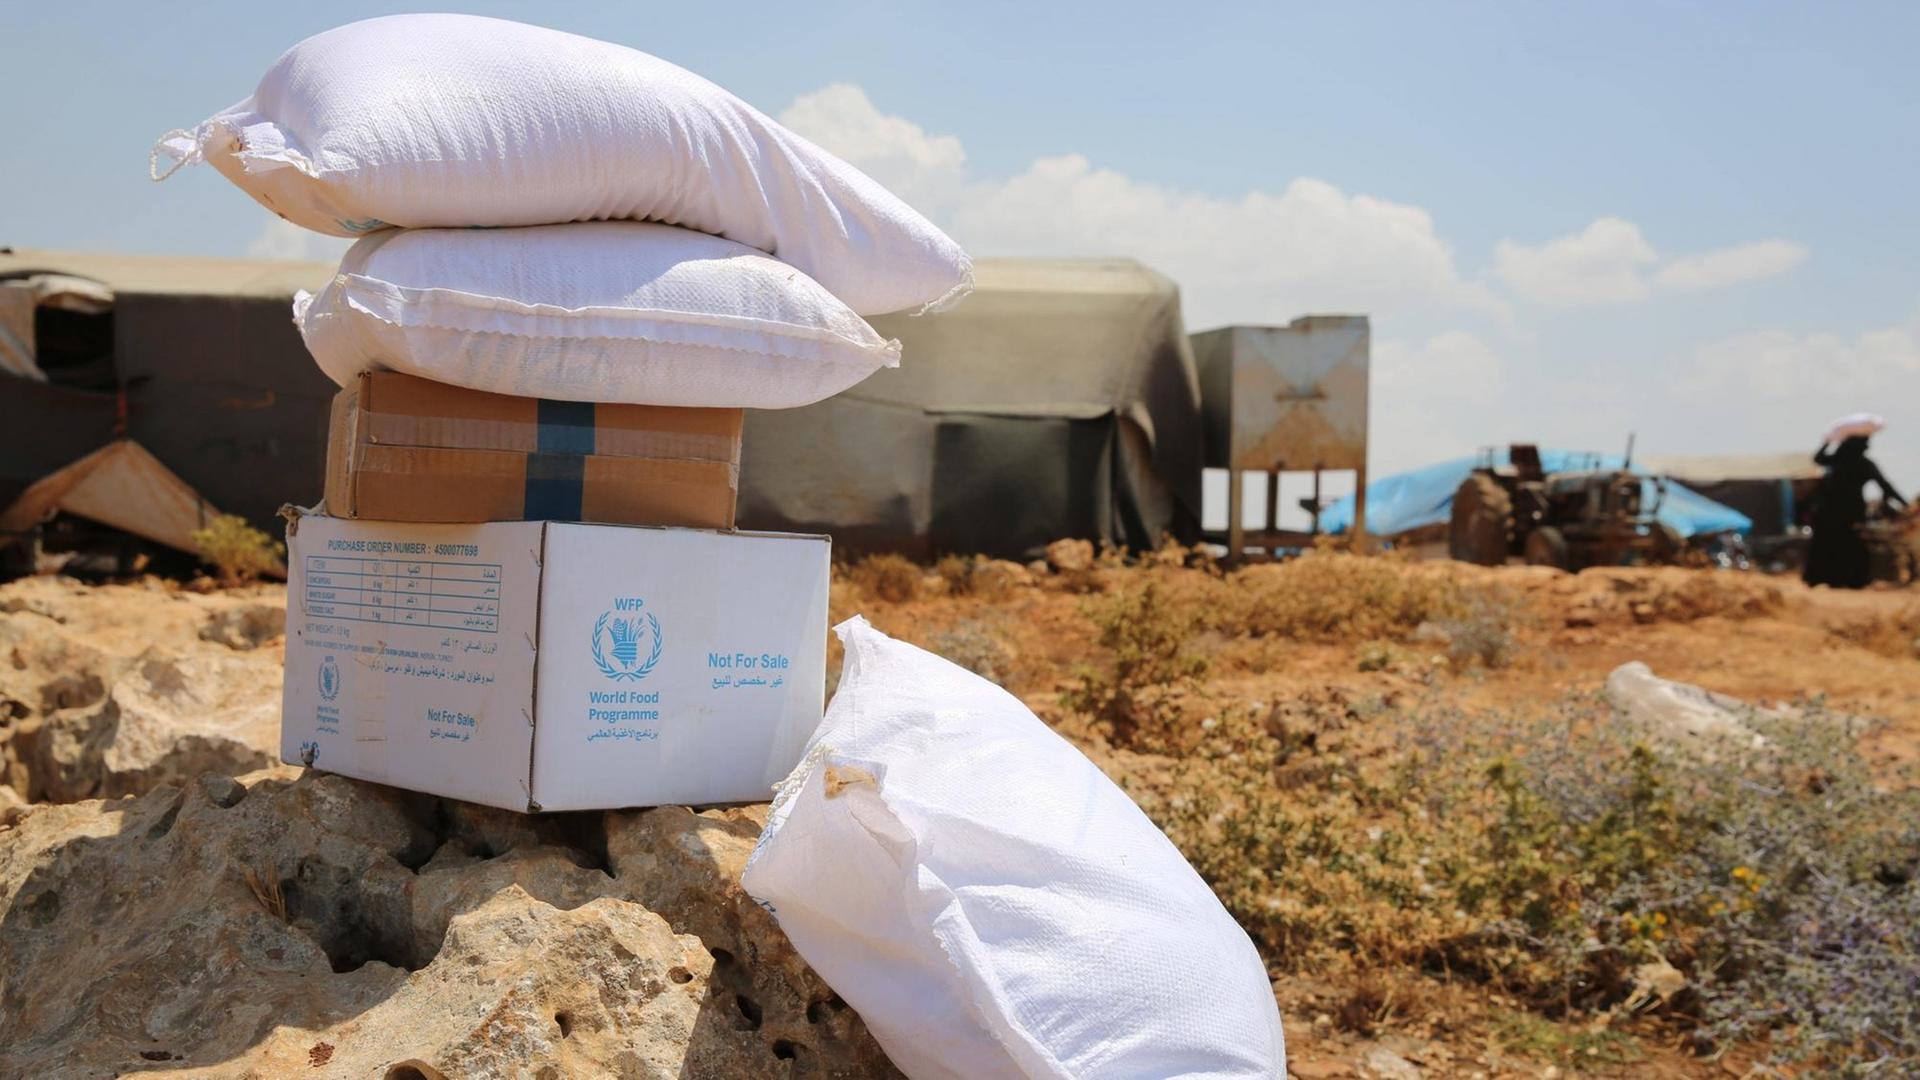 Hilfslieferungen an vertriebene Zivilisten in einem Lager in Darat Izza, nordwestlich von Aleppo. Derzeit erreicht humanitäre Hilfe das von Rebellen kontrollierte Gebiet im Nordwesten Syriens über den Grenzübergang Bab Al-Hawa, den der UN-Sicherheitsrat 2014, drei Jahre nach Beginn des Syrien-Konflikts, genehmigt hat.